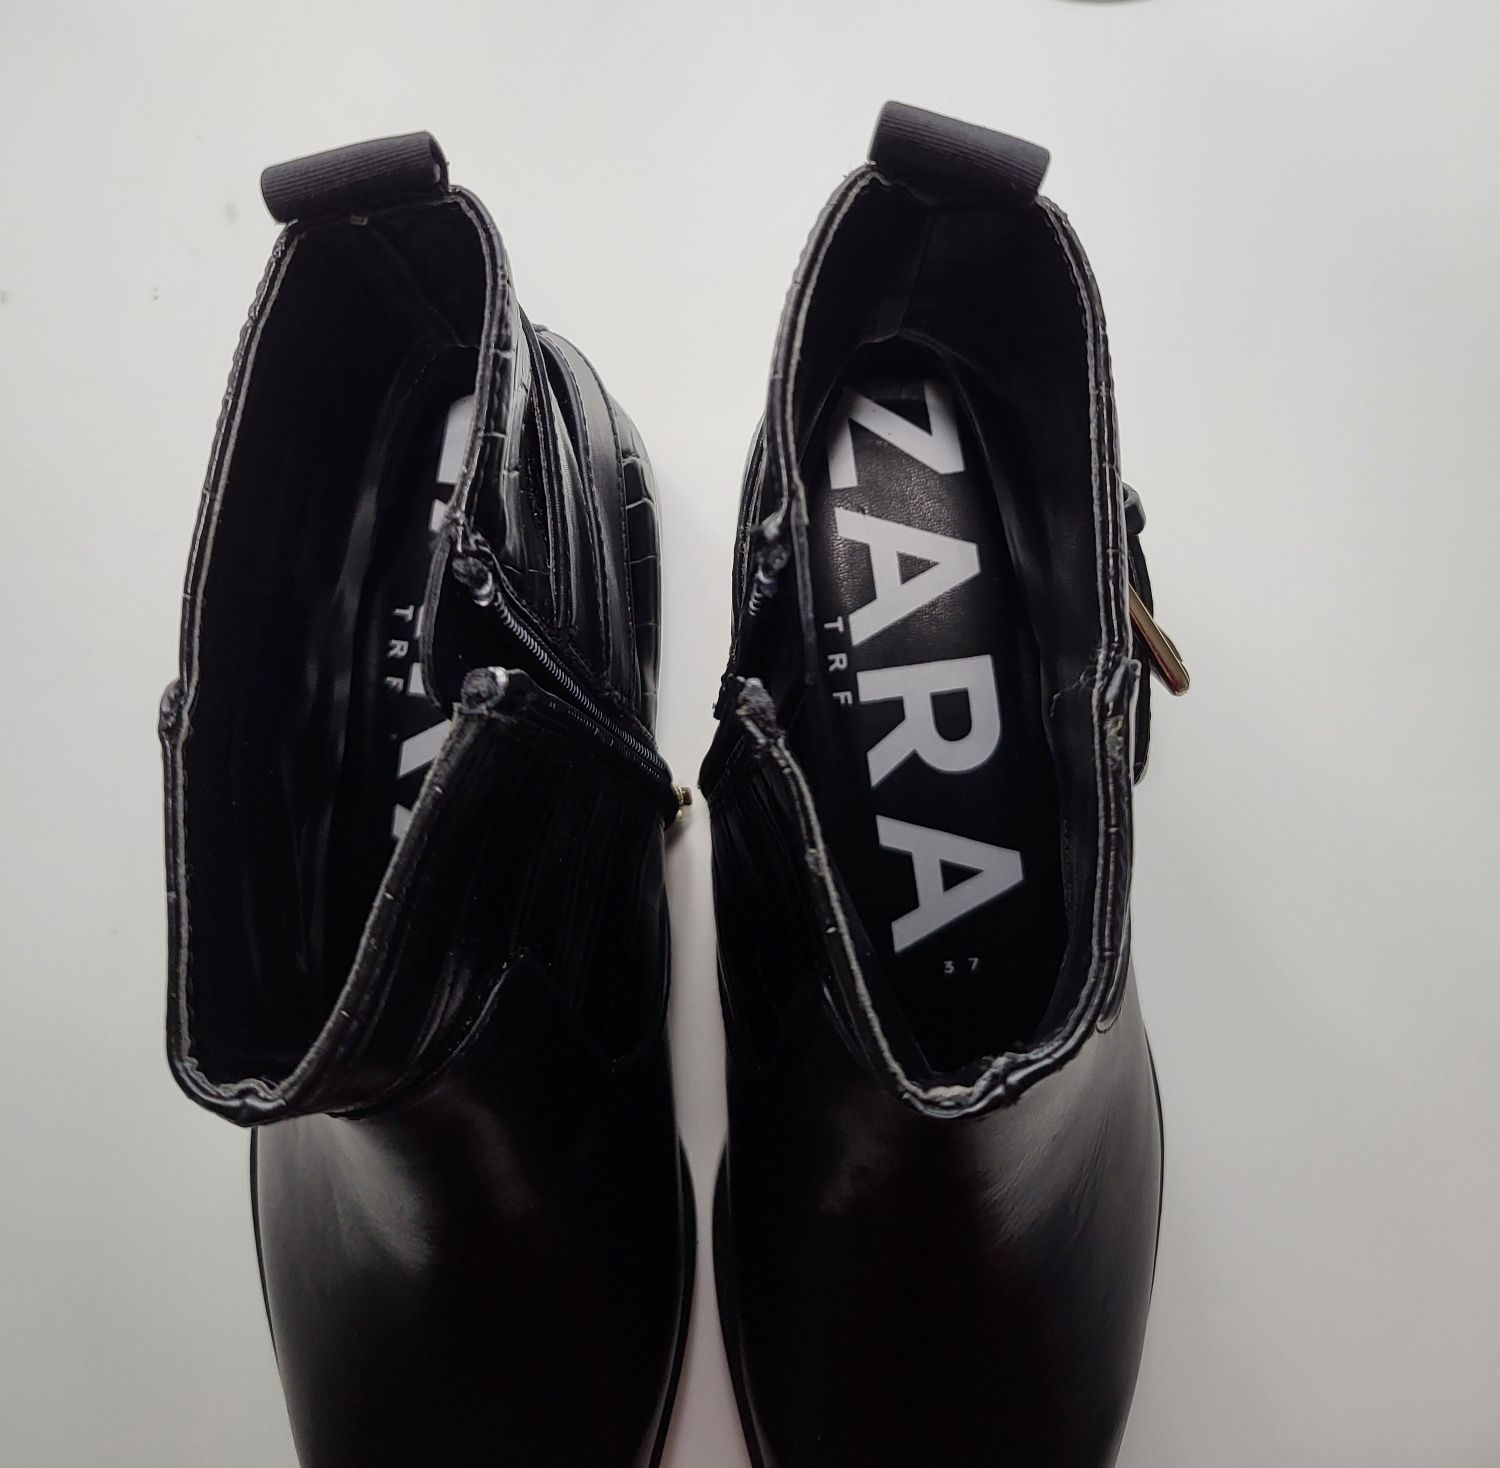 Botins pretos de couro da Zara